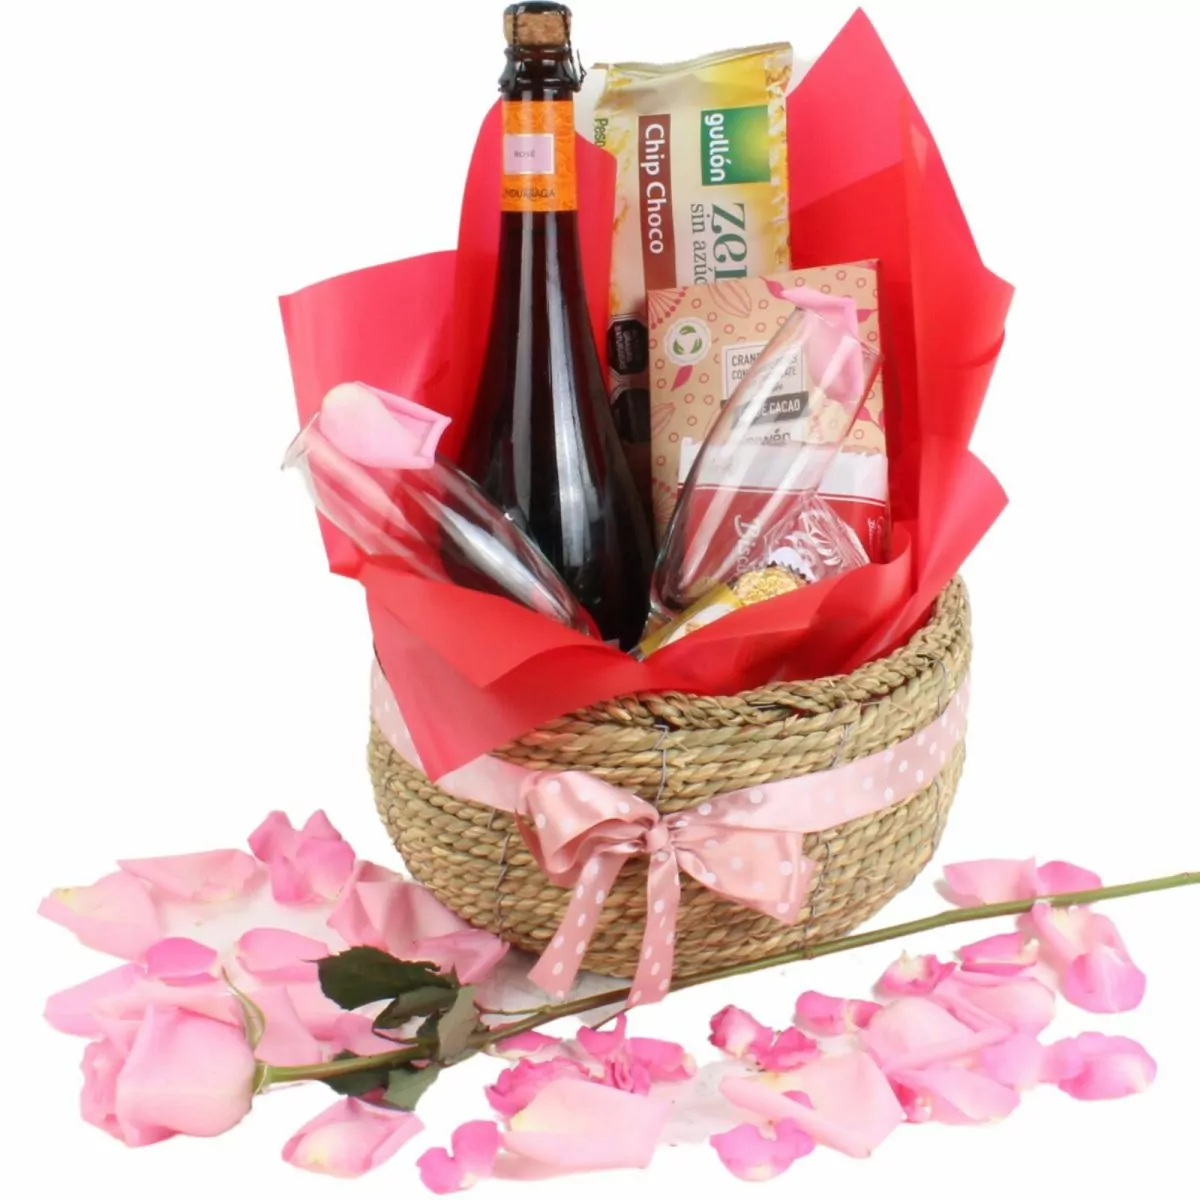 Foto principal Canasto Rosé - Set de regalo en canasto con espumante Rosé, copas, chocolates y pétalos de rosa